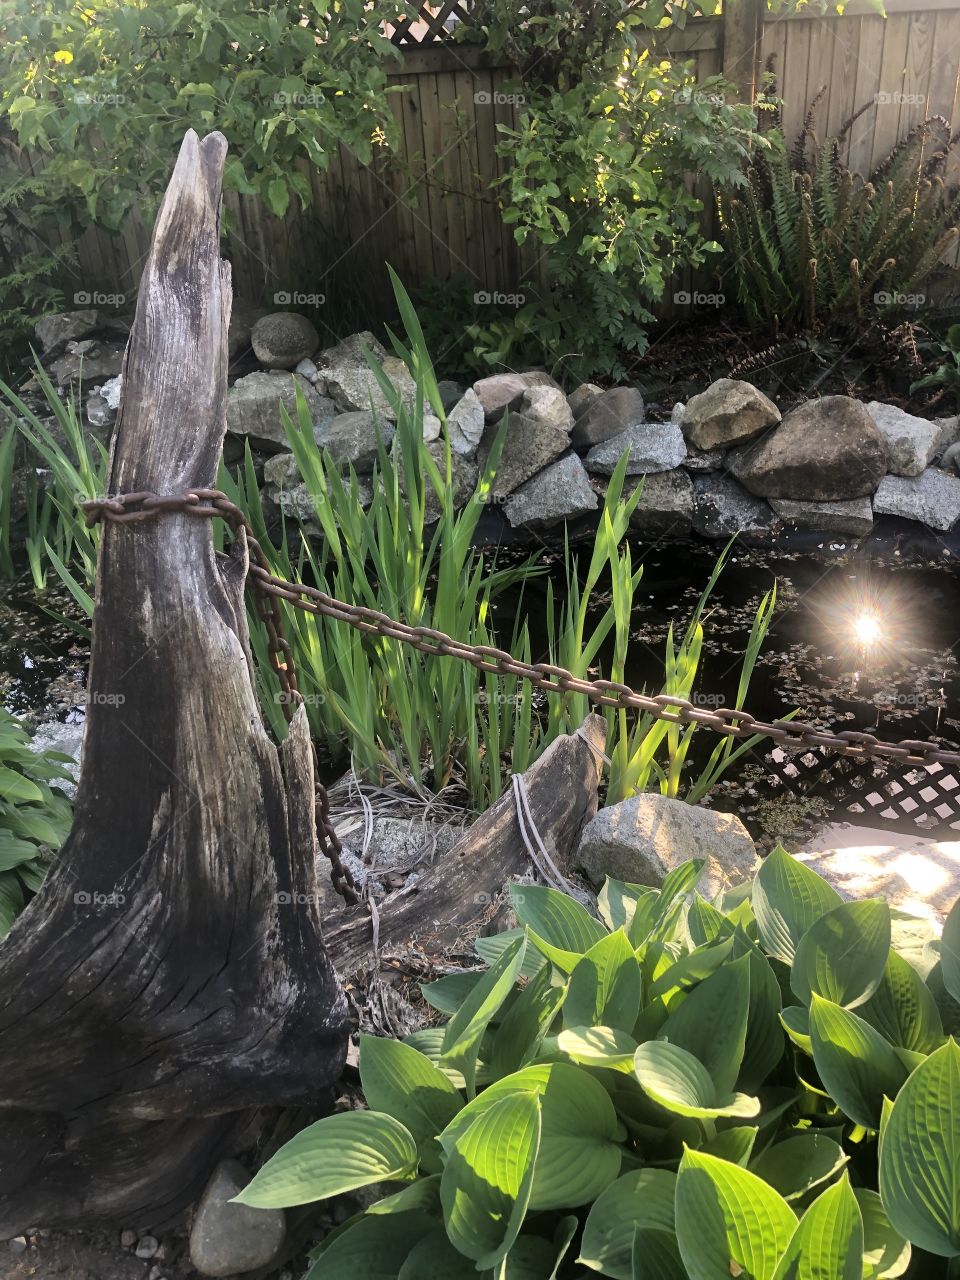 Sun Reflection in garden pond 